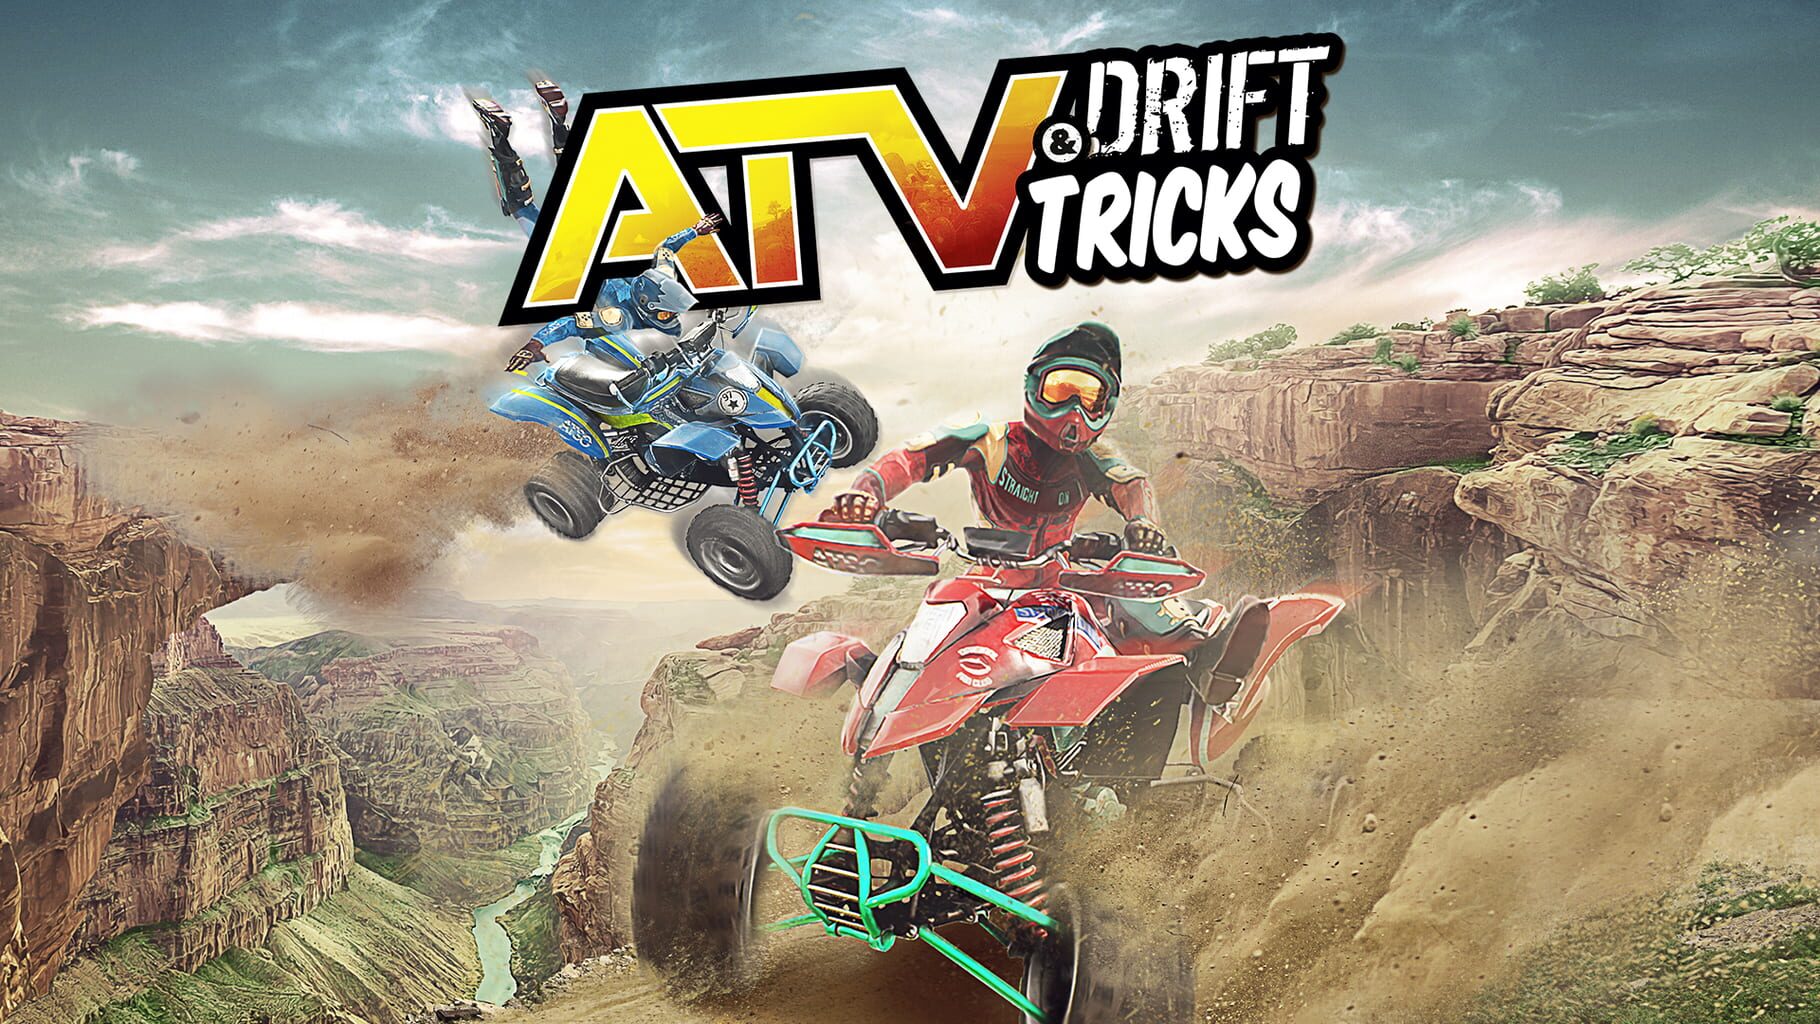 ATV Drift & Tricks artwork